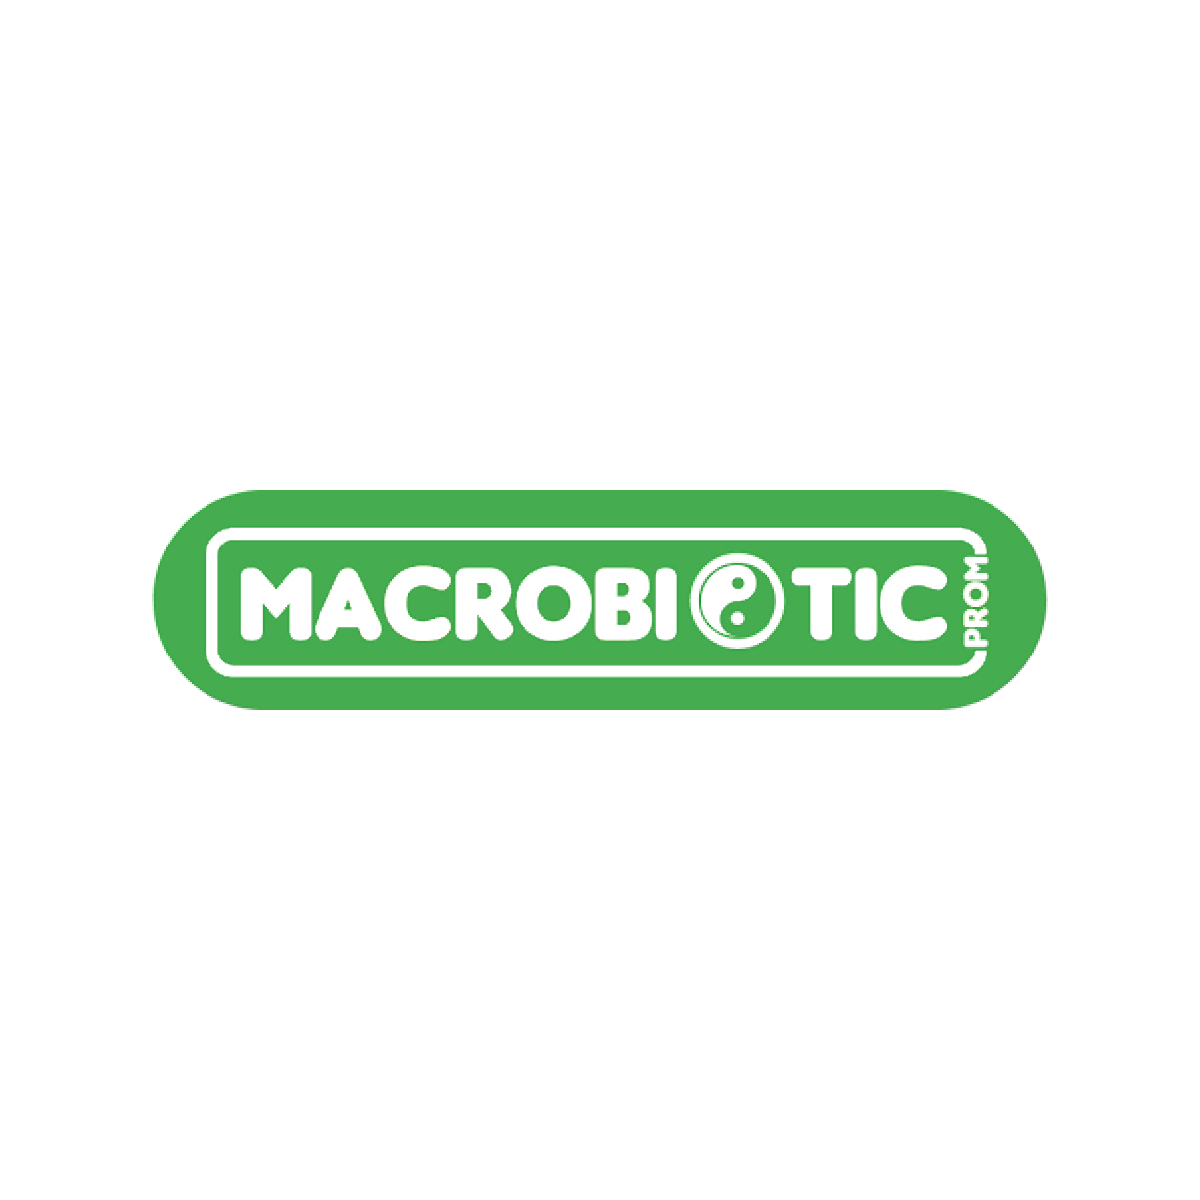 Macrobiotic